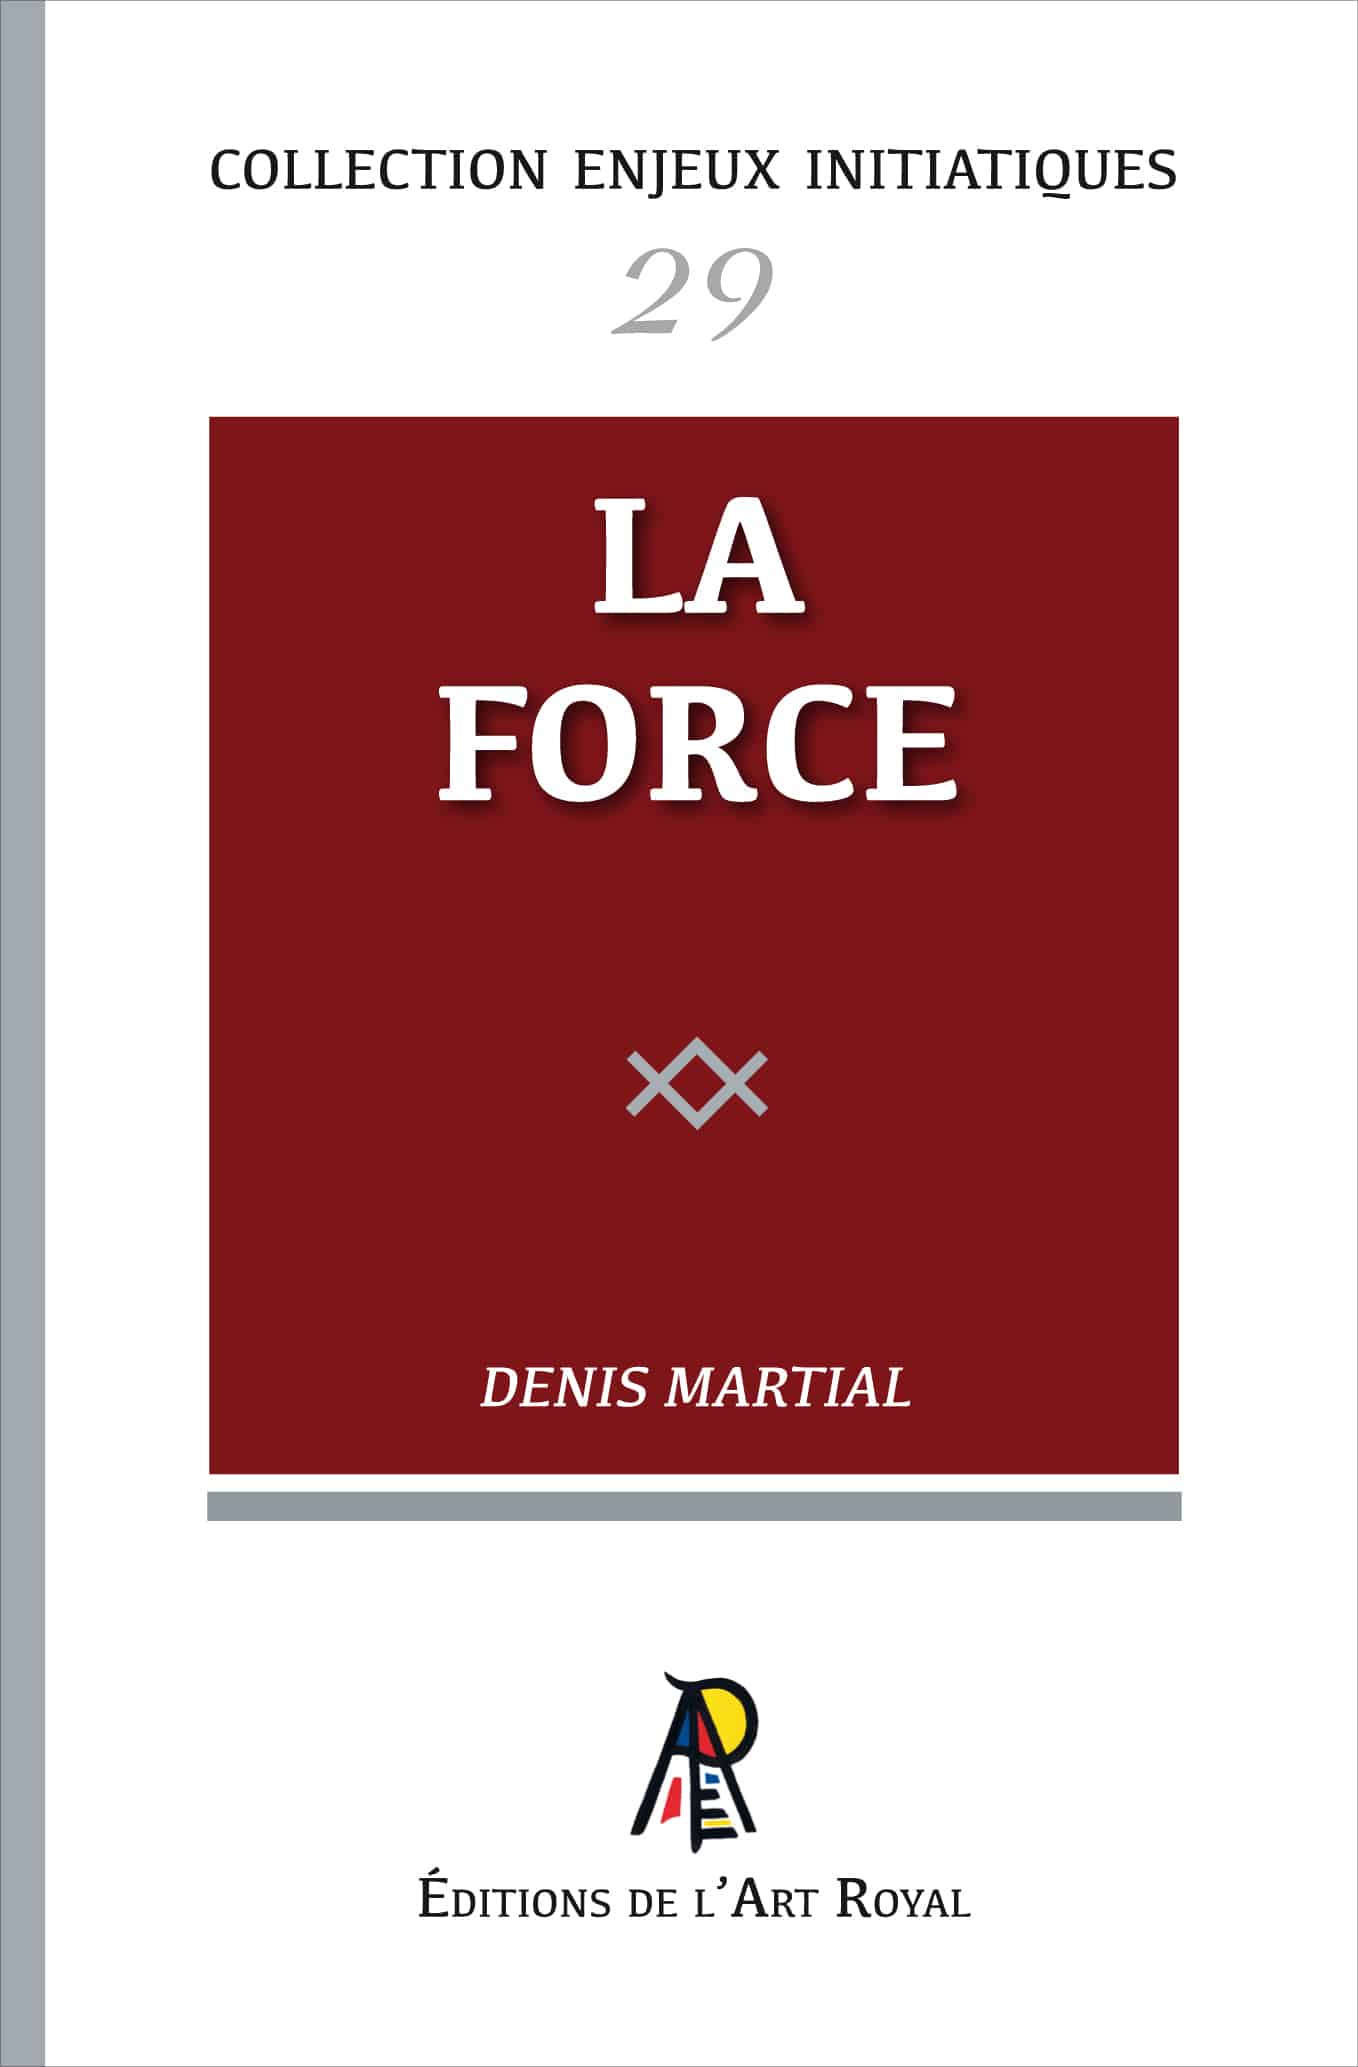 La Force, Denis Martial